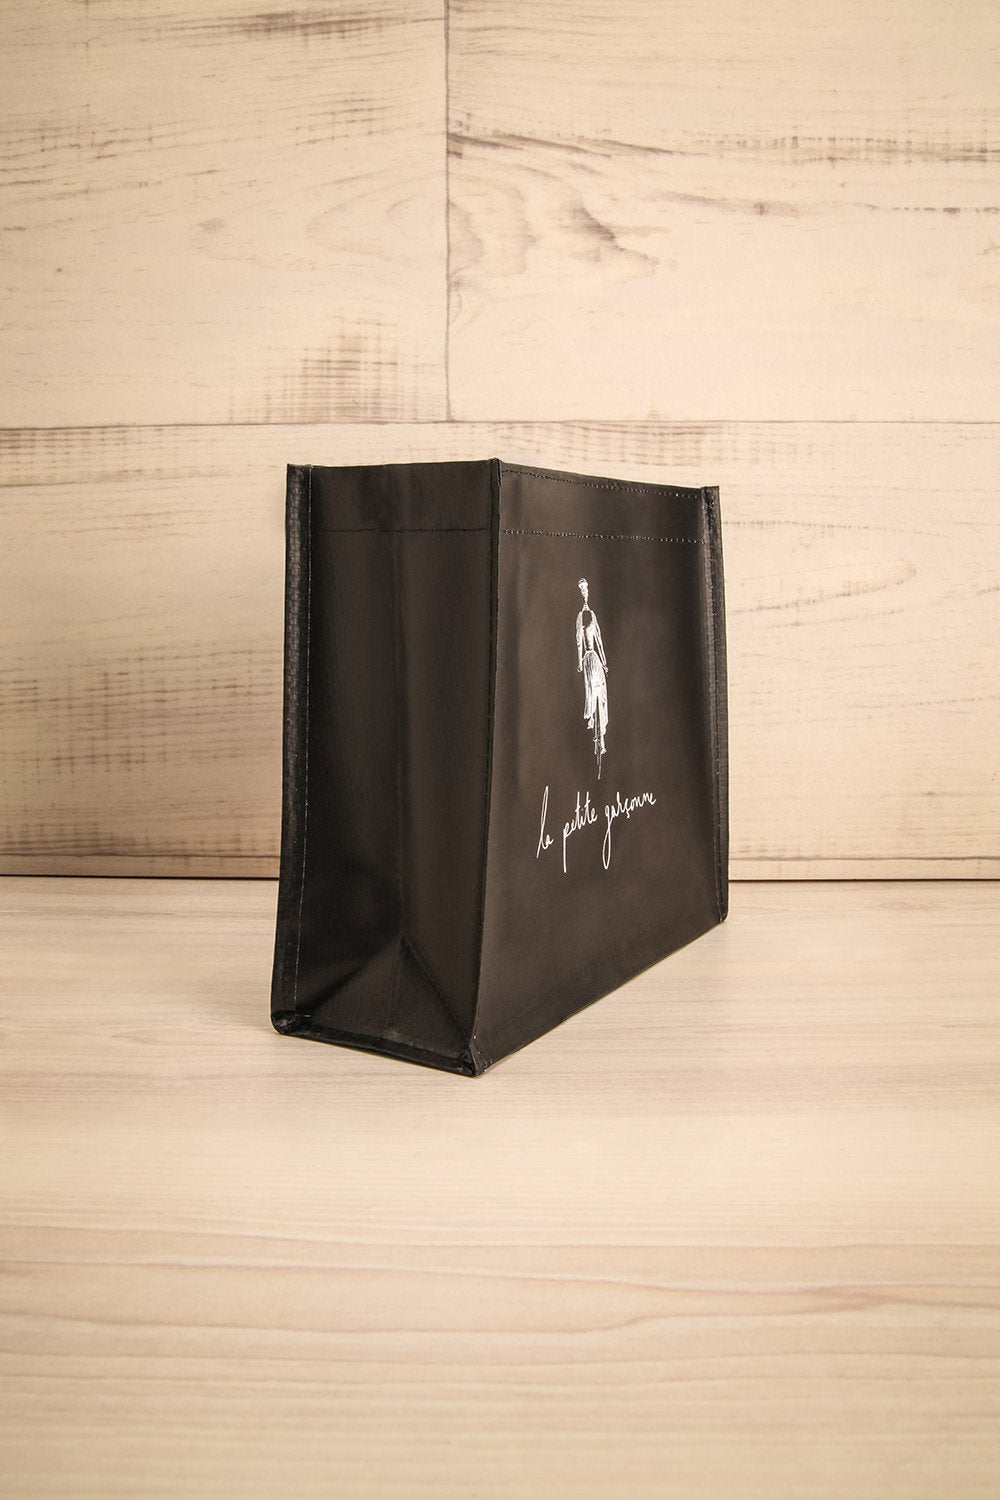 Mini Sac LPG - Black and white reusable bag